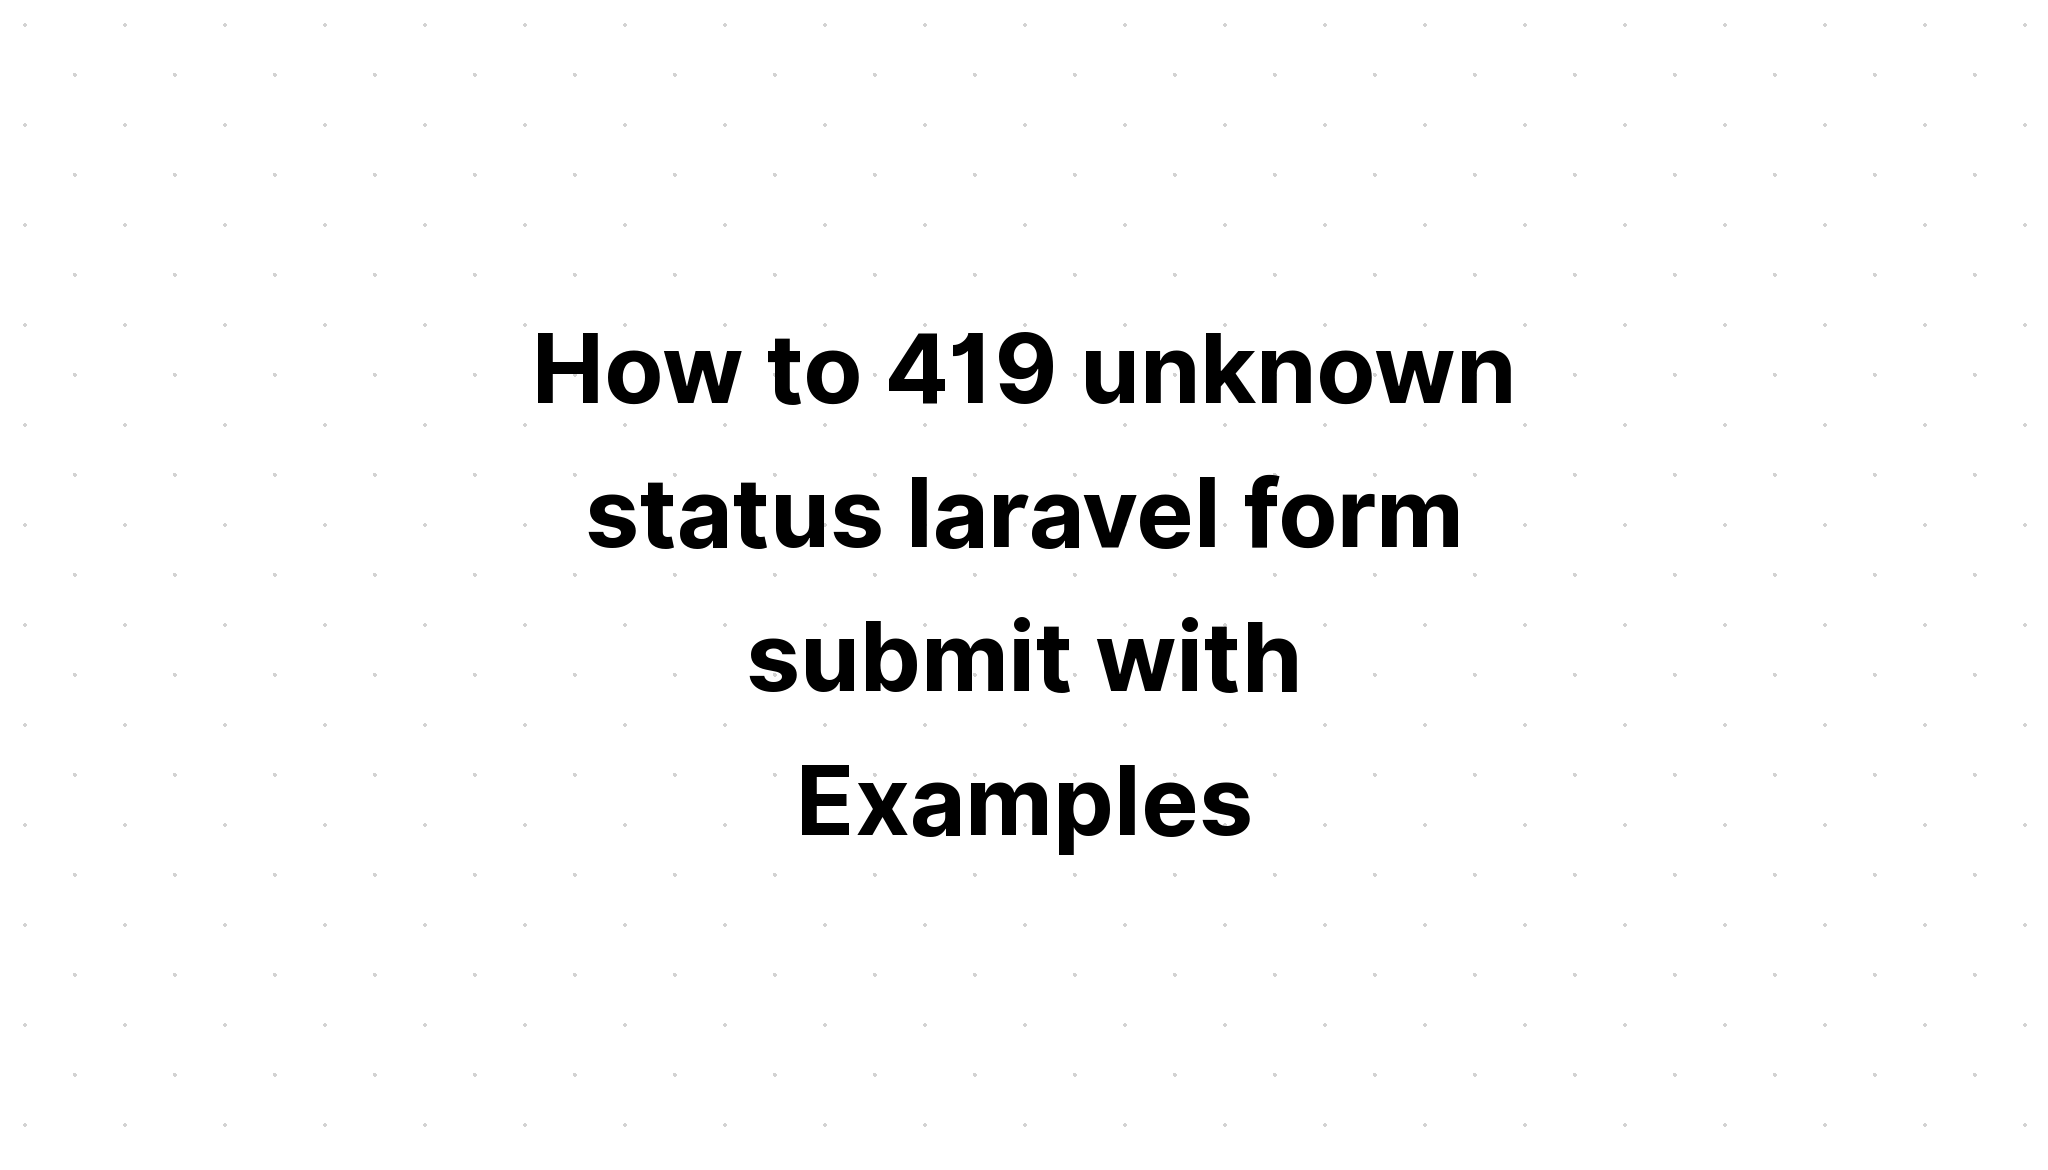 Cách gửi biểu mẫu laravel 419 trạng thái không xác định với các ví dụ